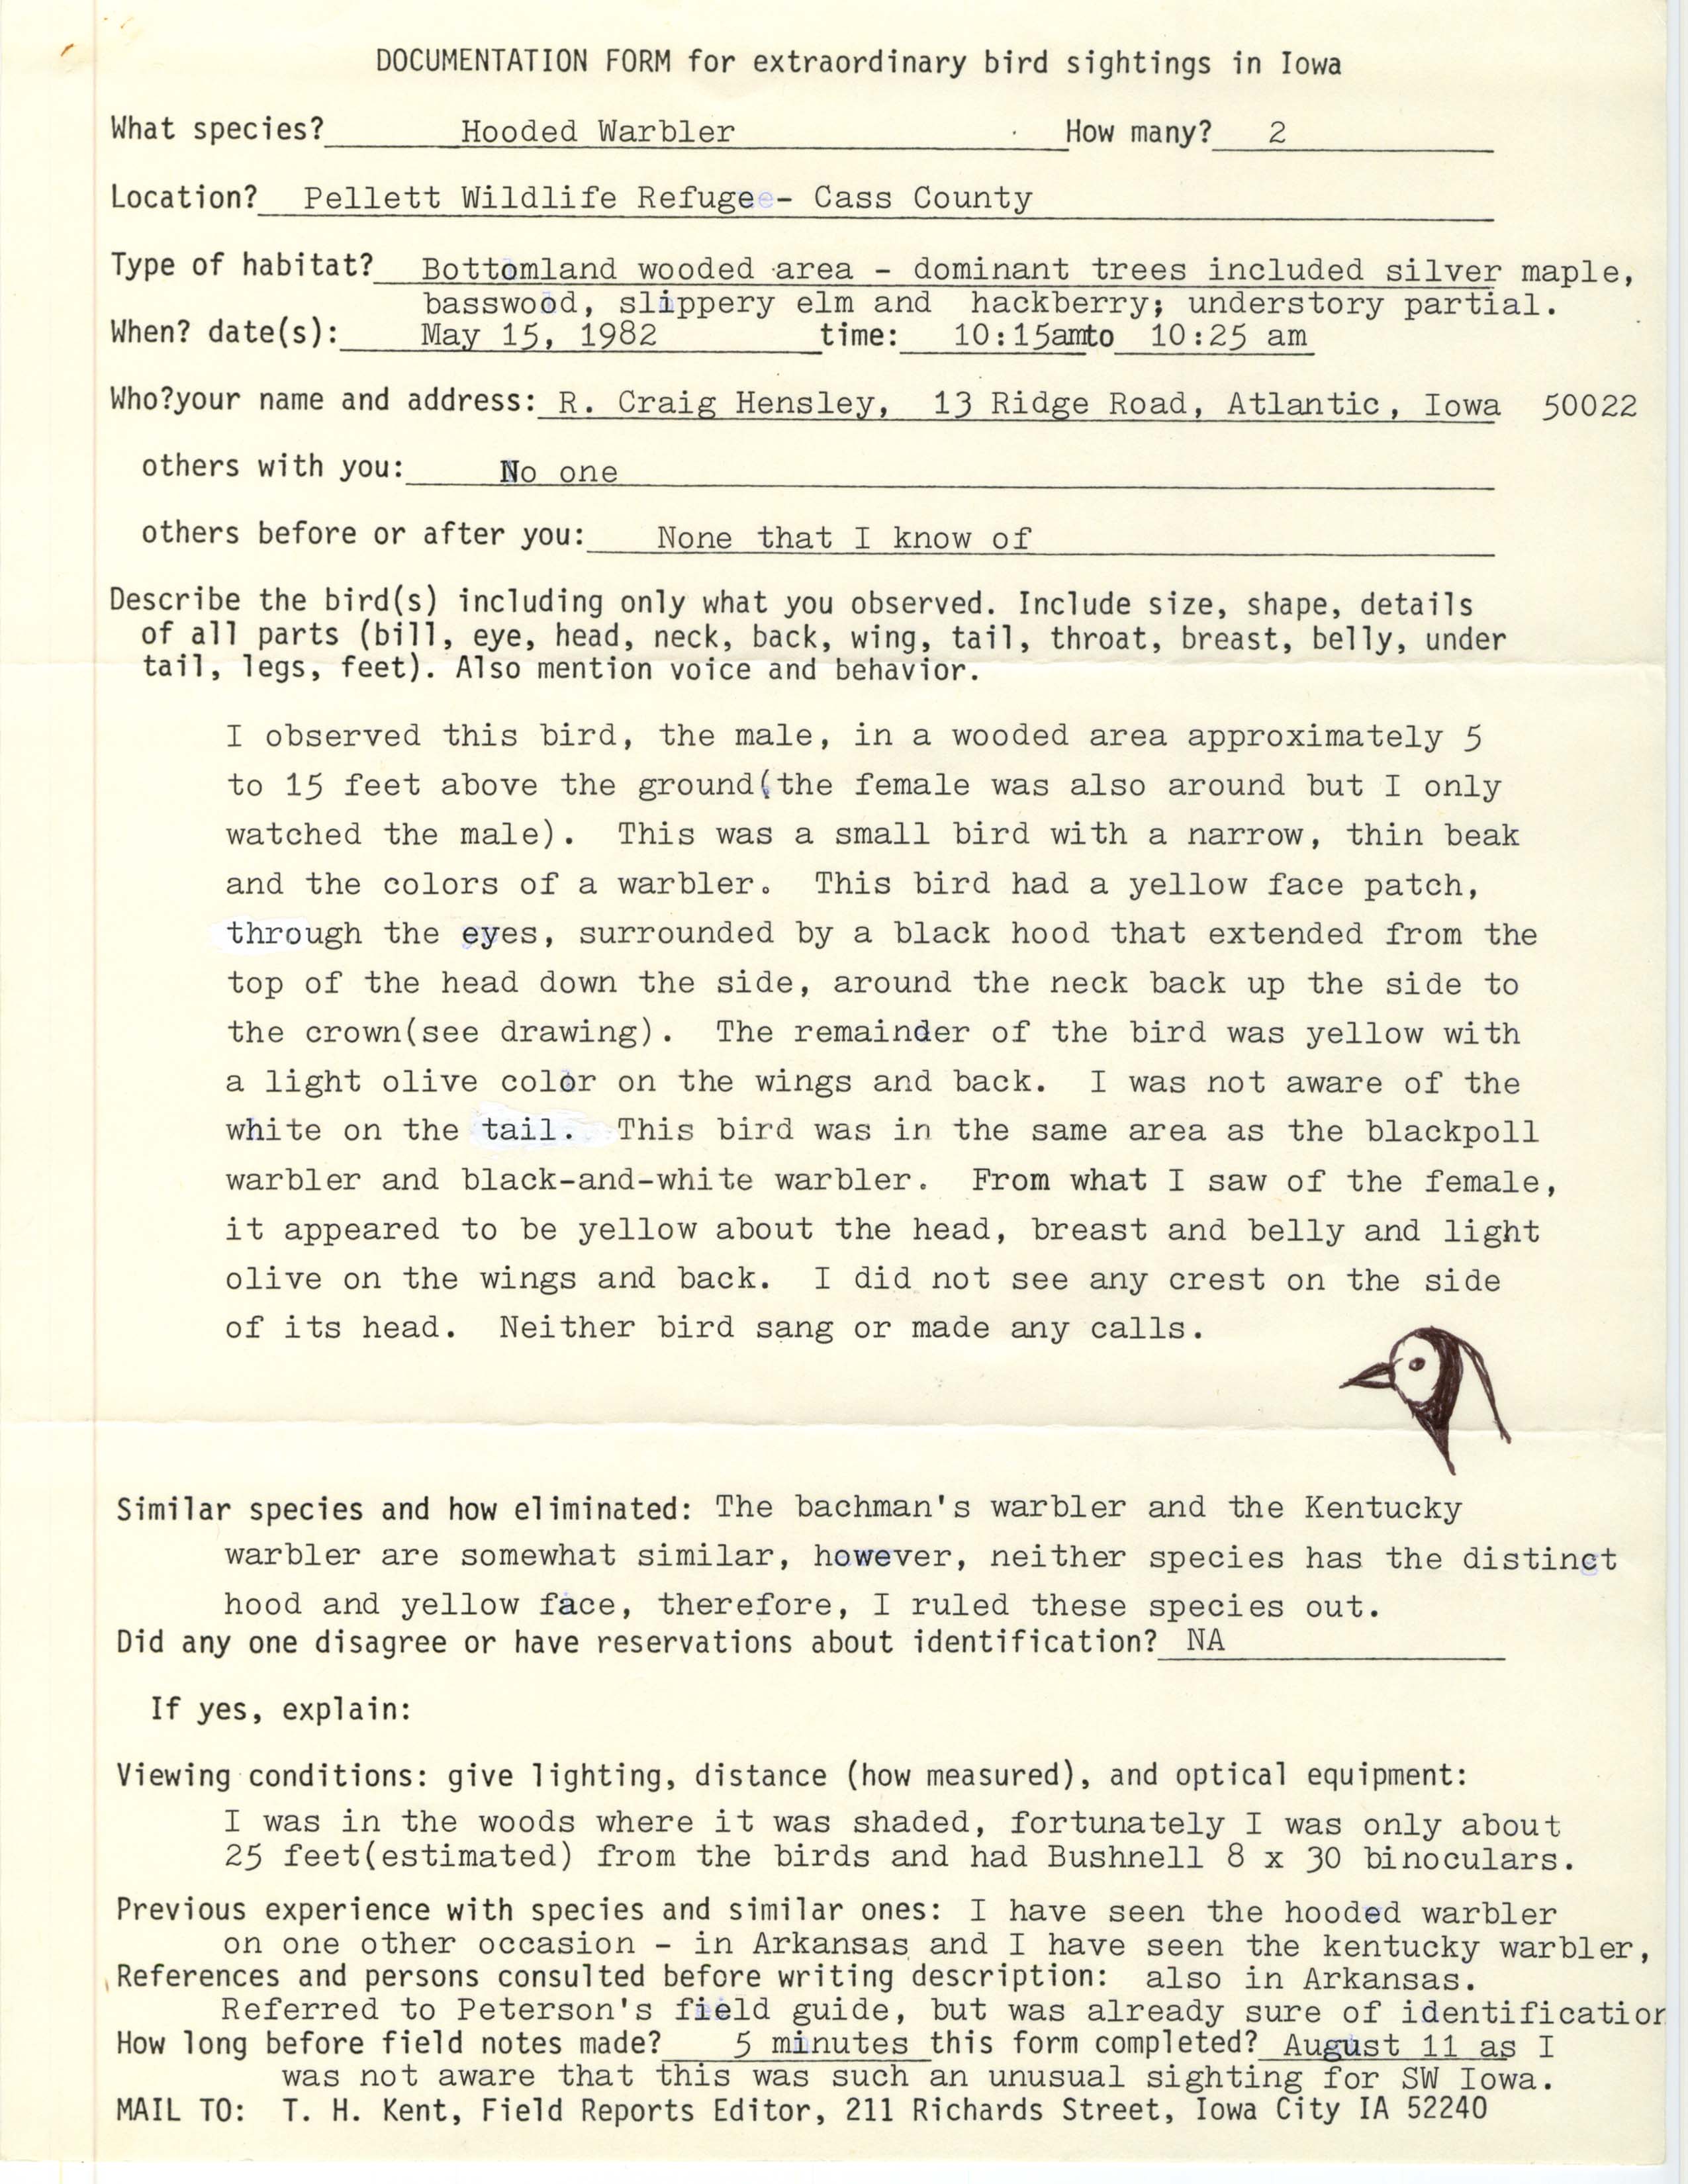 Rare bird documentation form for Hooded Warbler at Pellet Wildlife Refuge, 1982